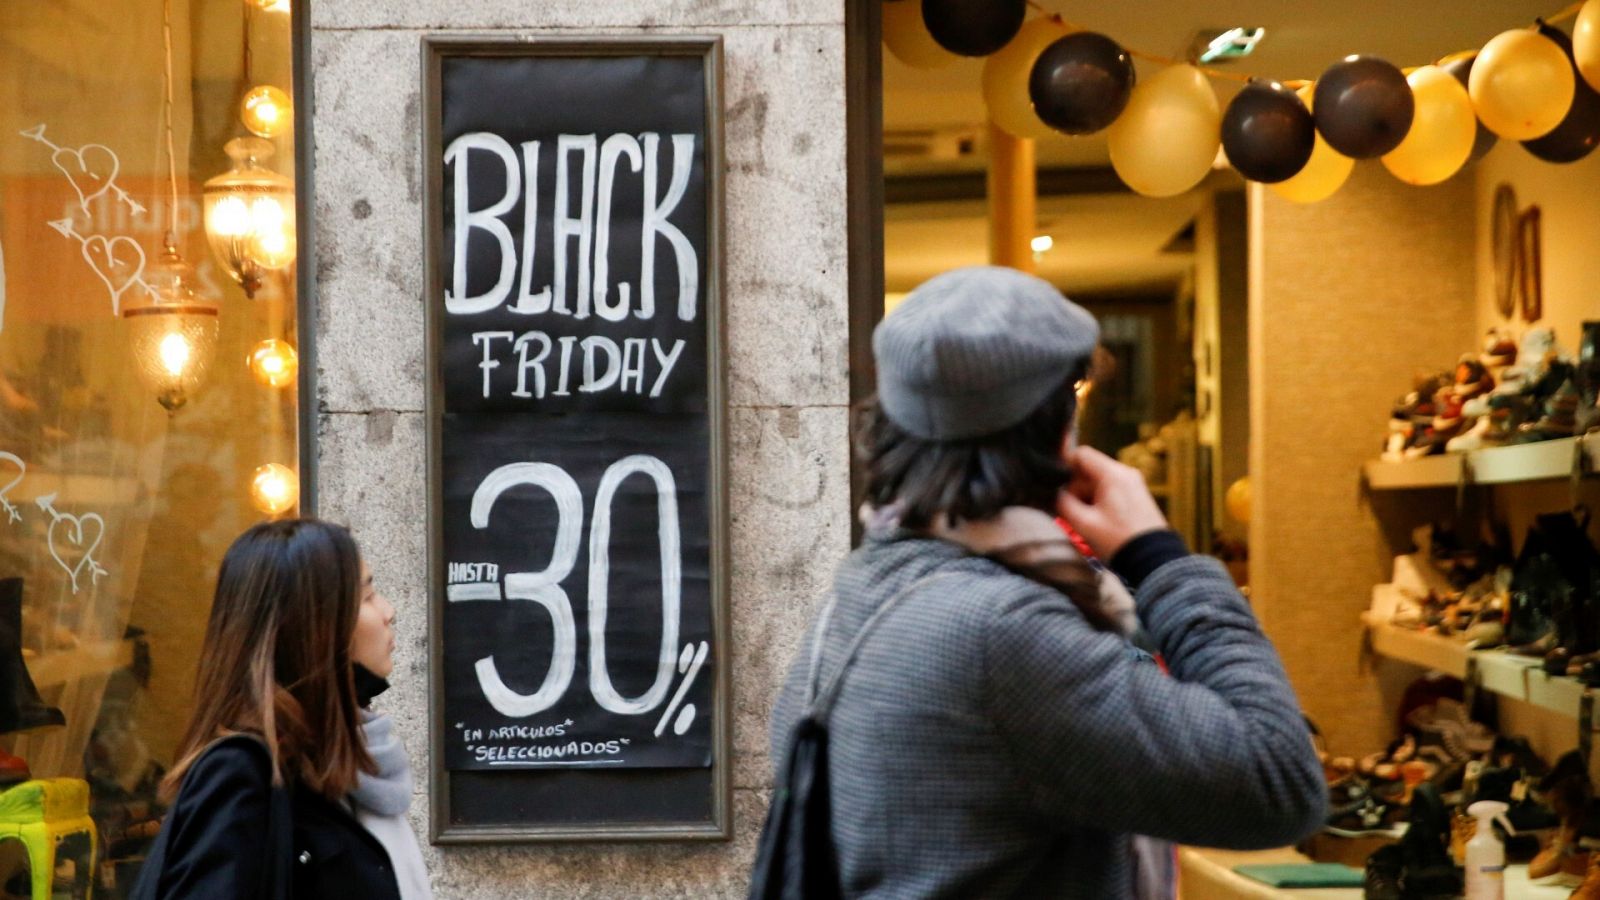 Les ofertes i descomptes especials del Black Friday animen als consumidors a buscar els millors preus